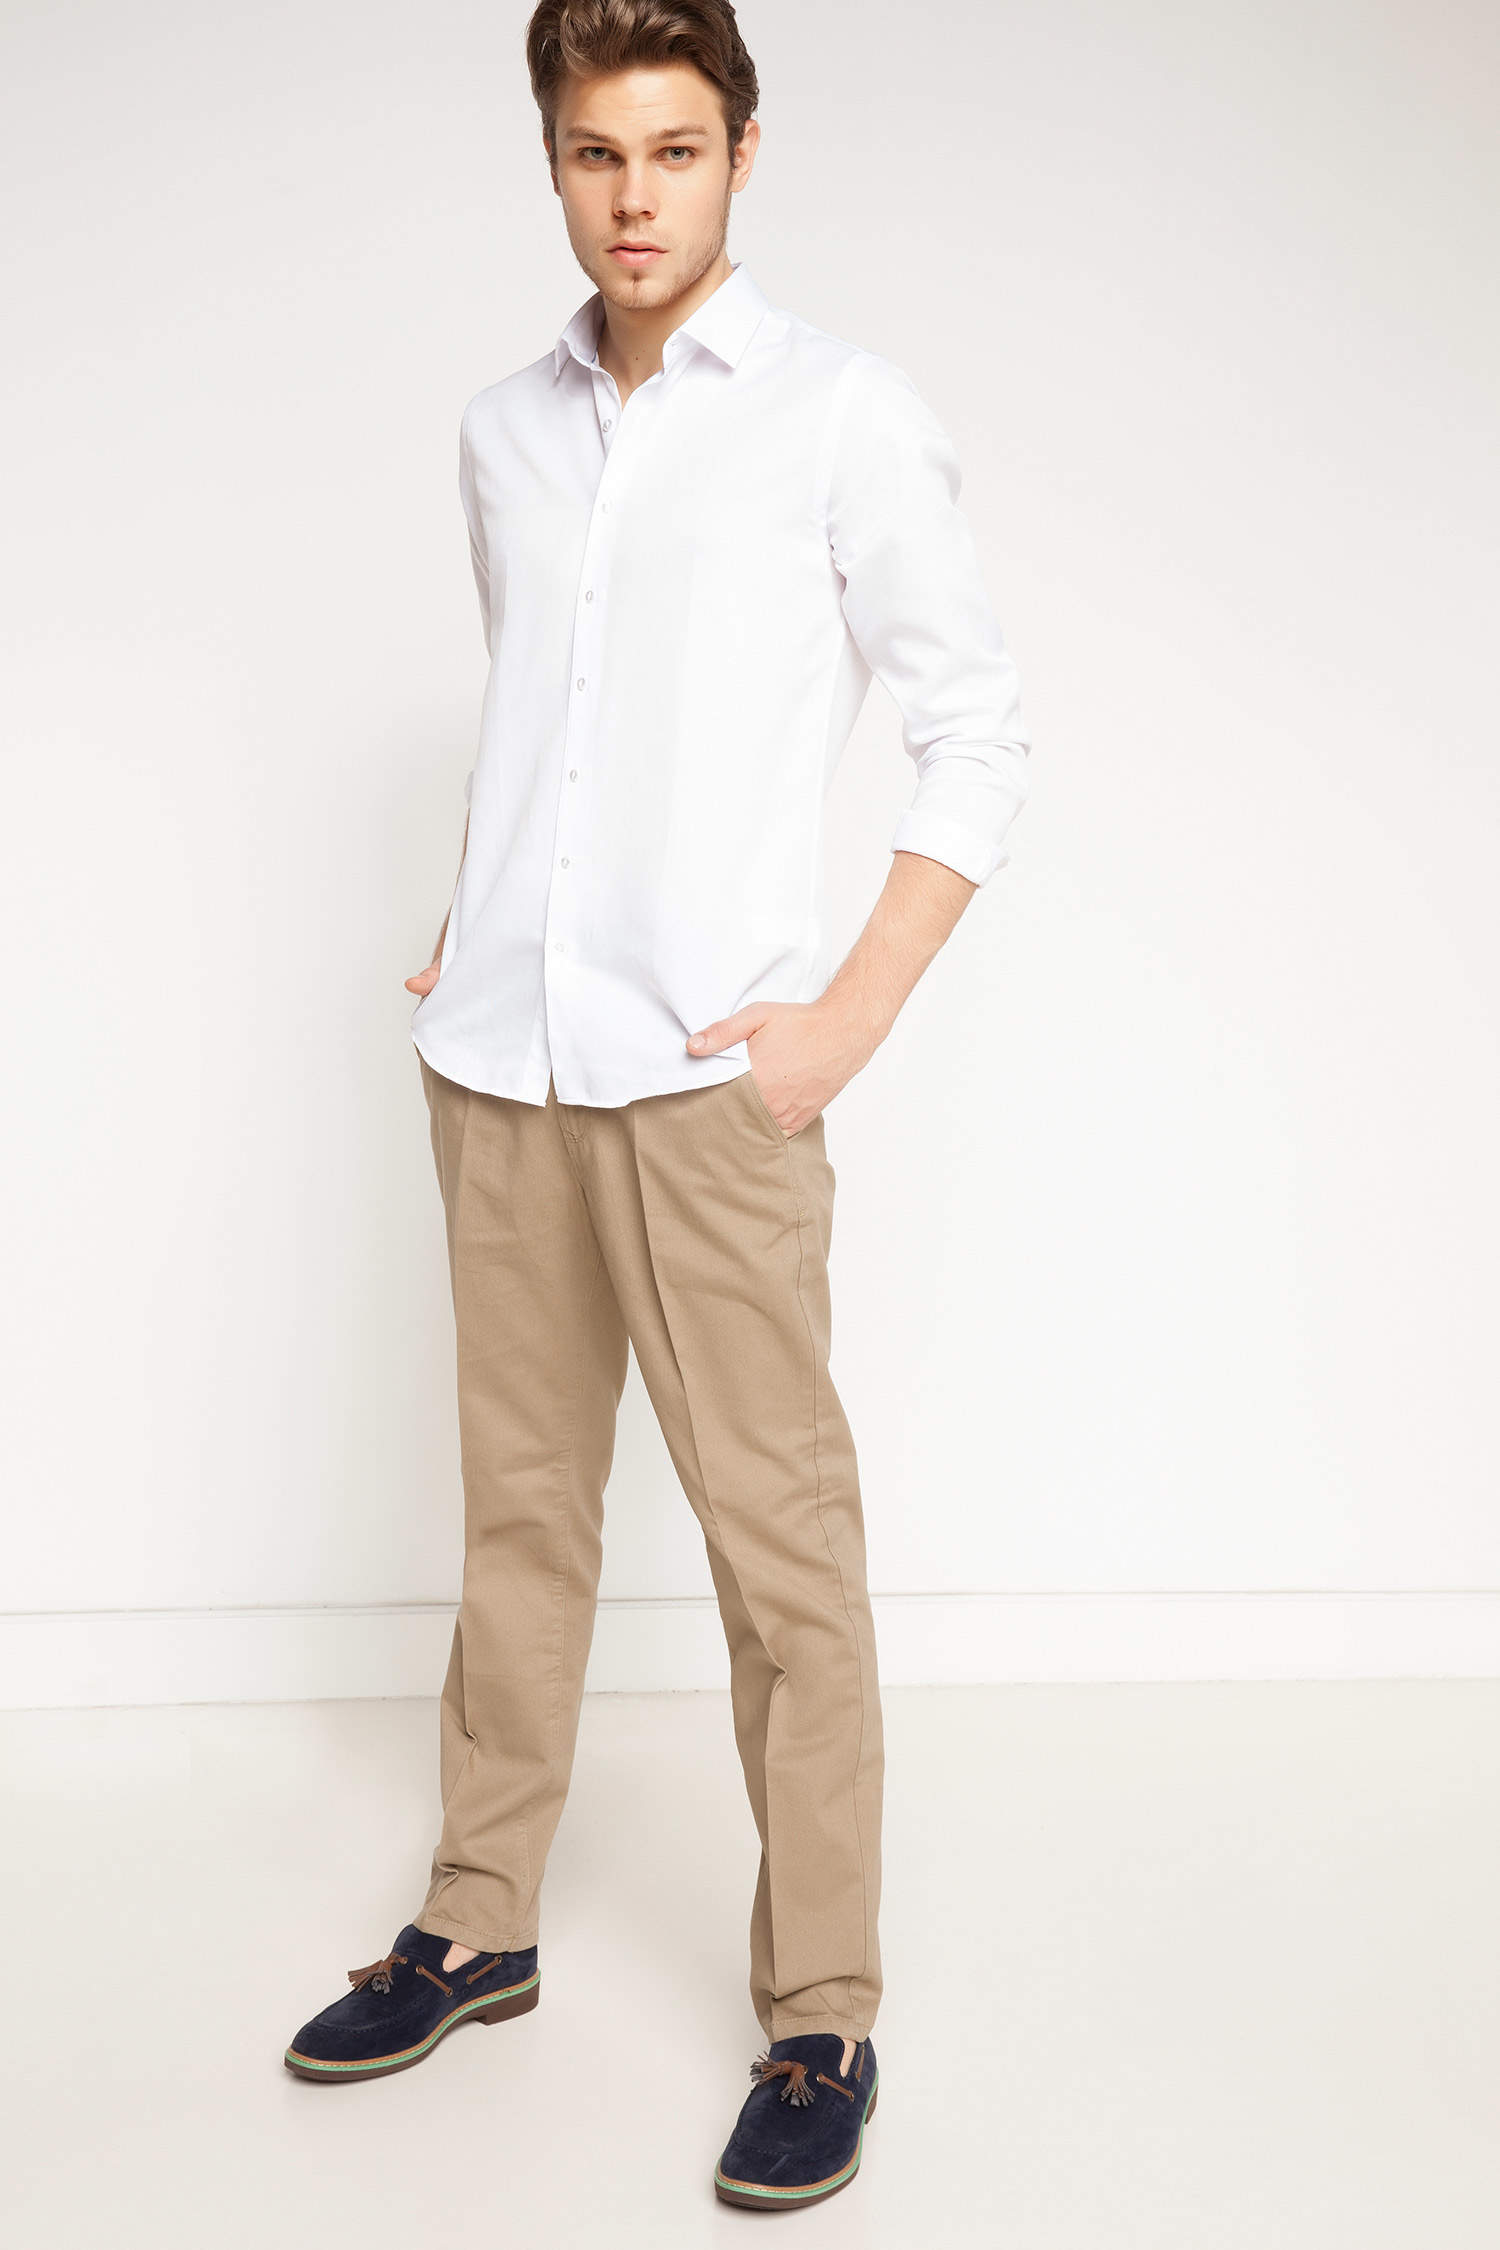 Бежевые брюки и белая рубашка мужская